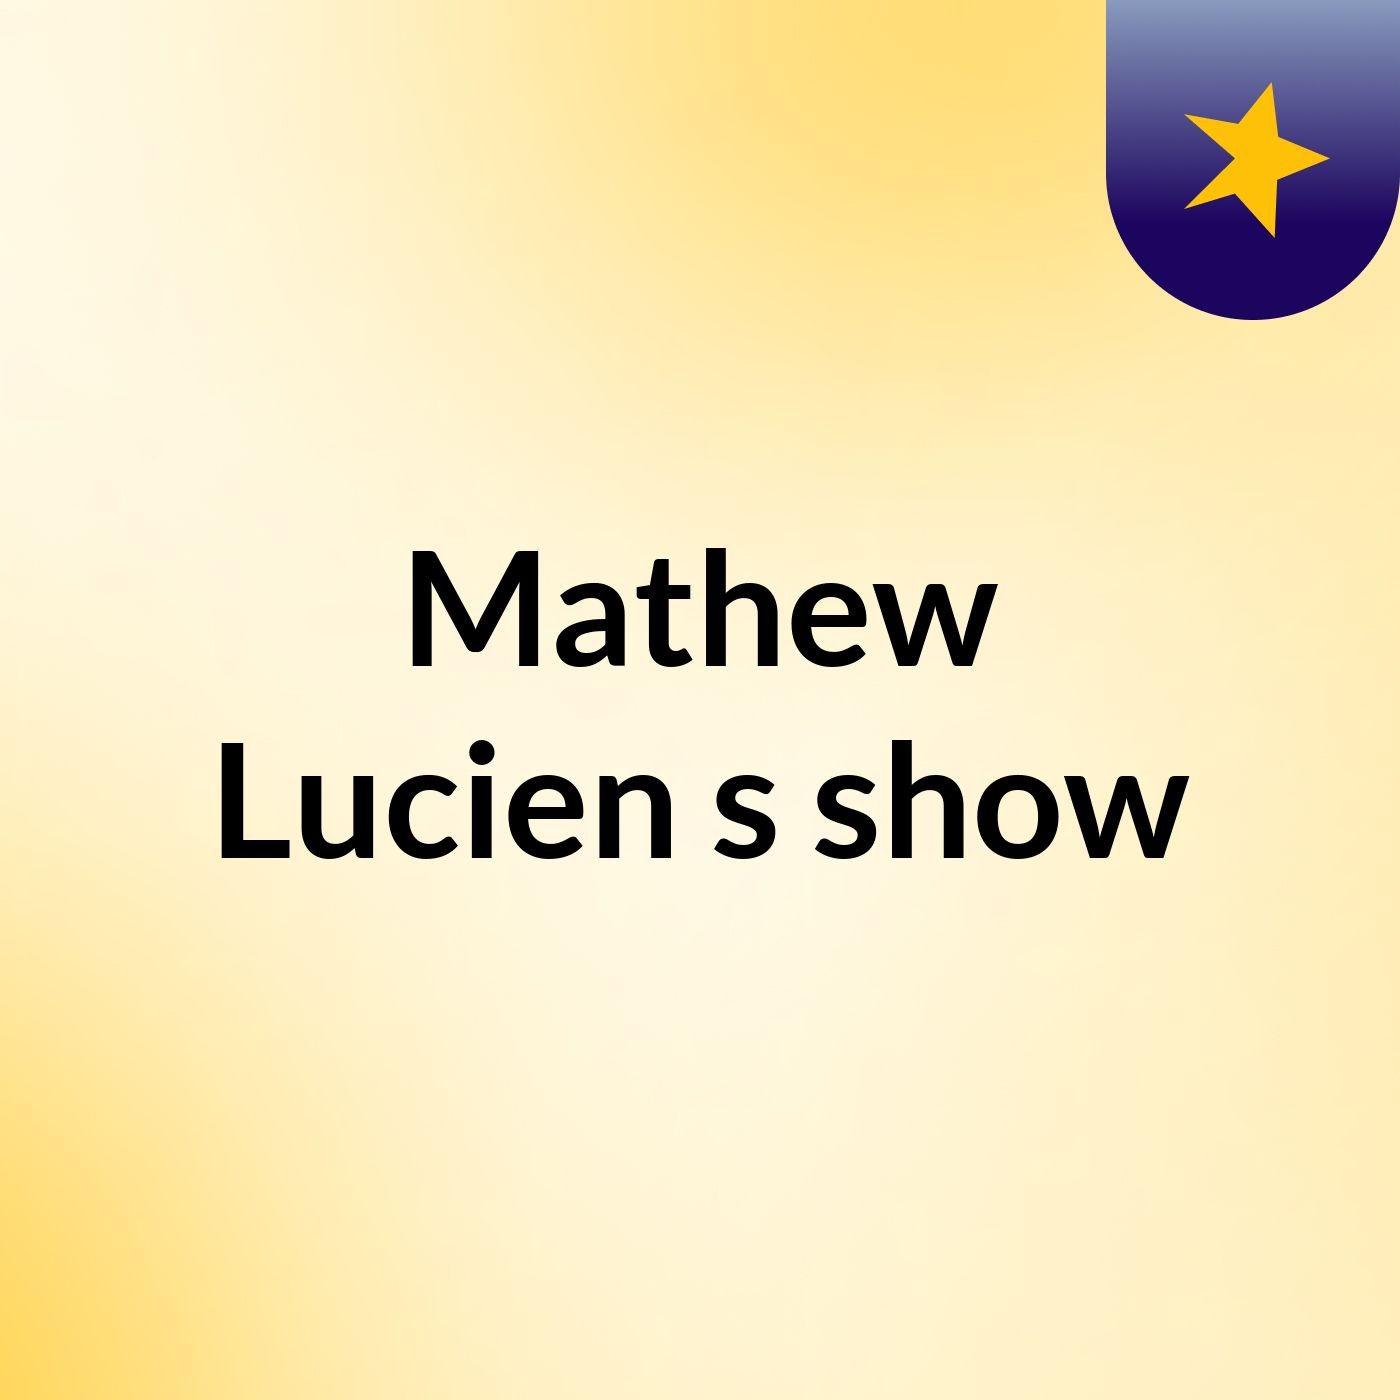 Mathew Lucien's show